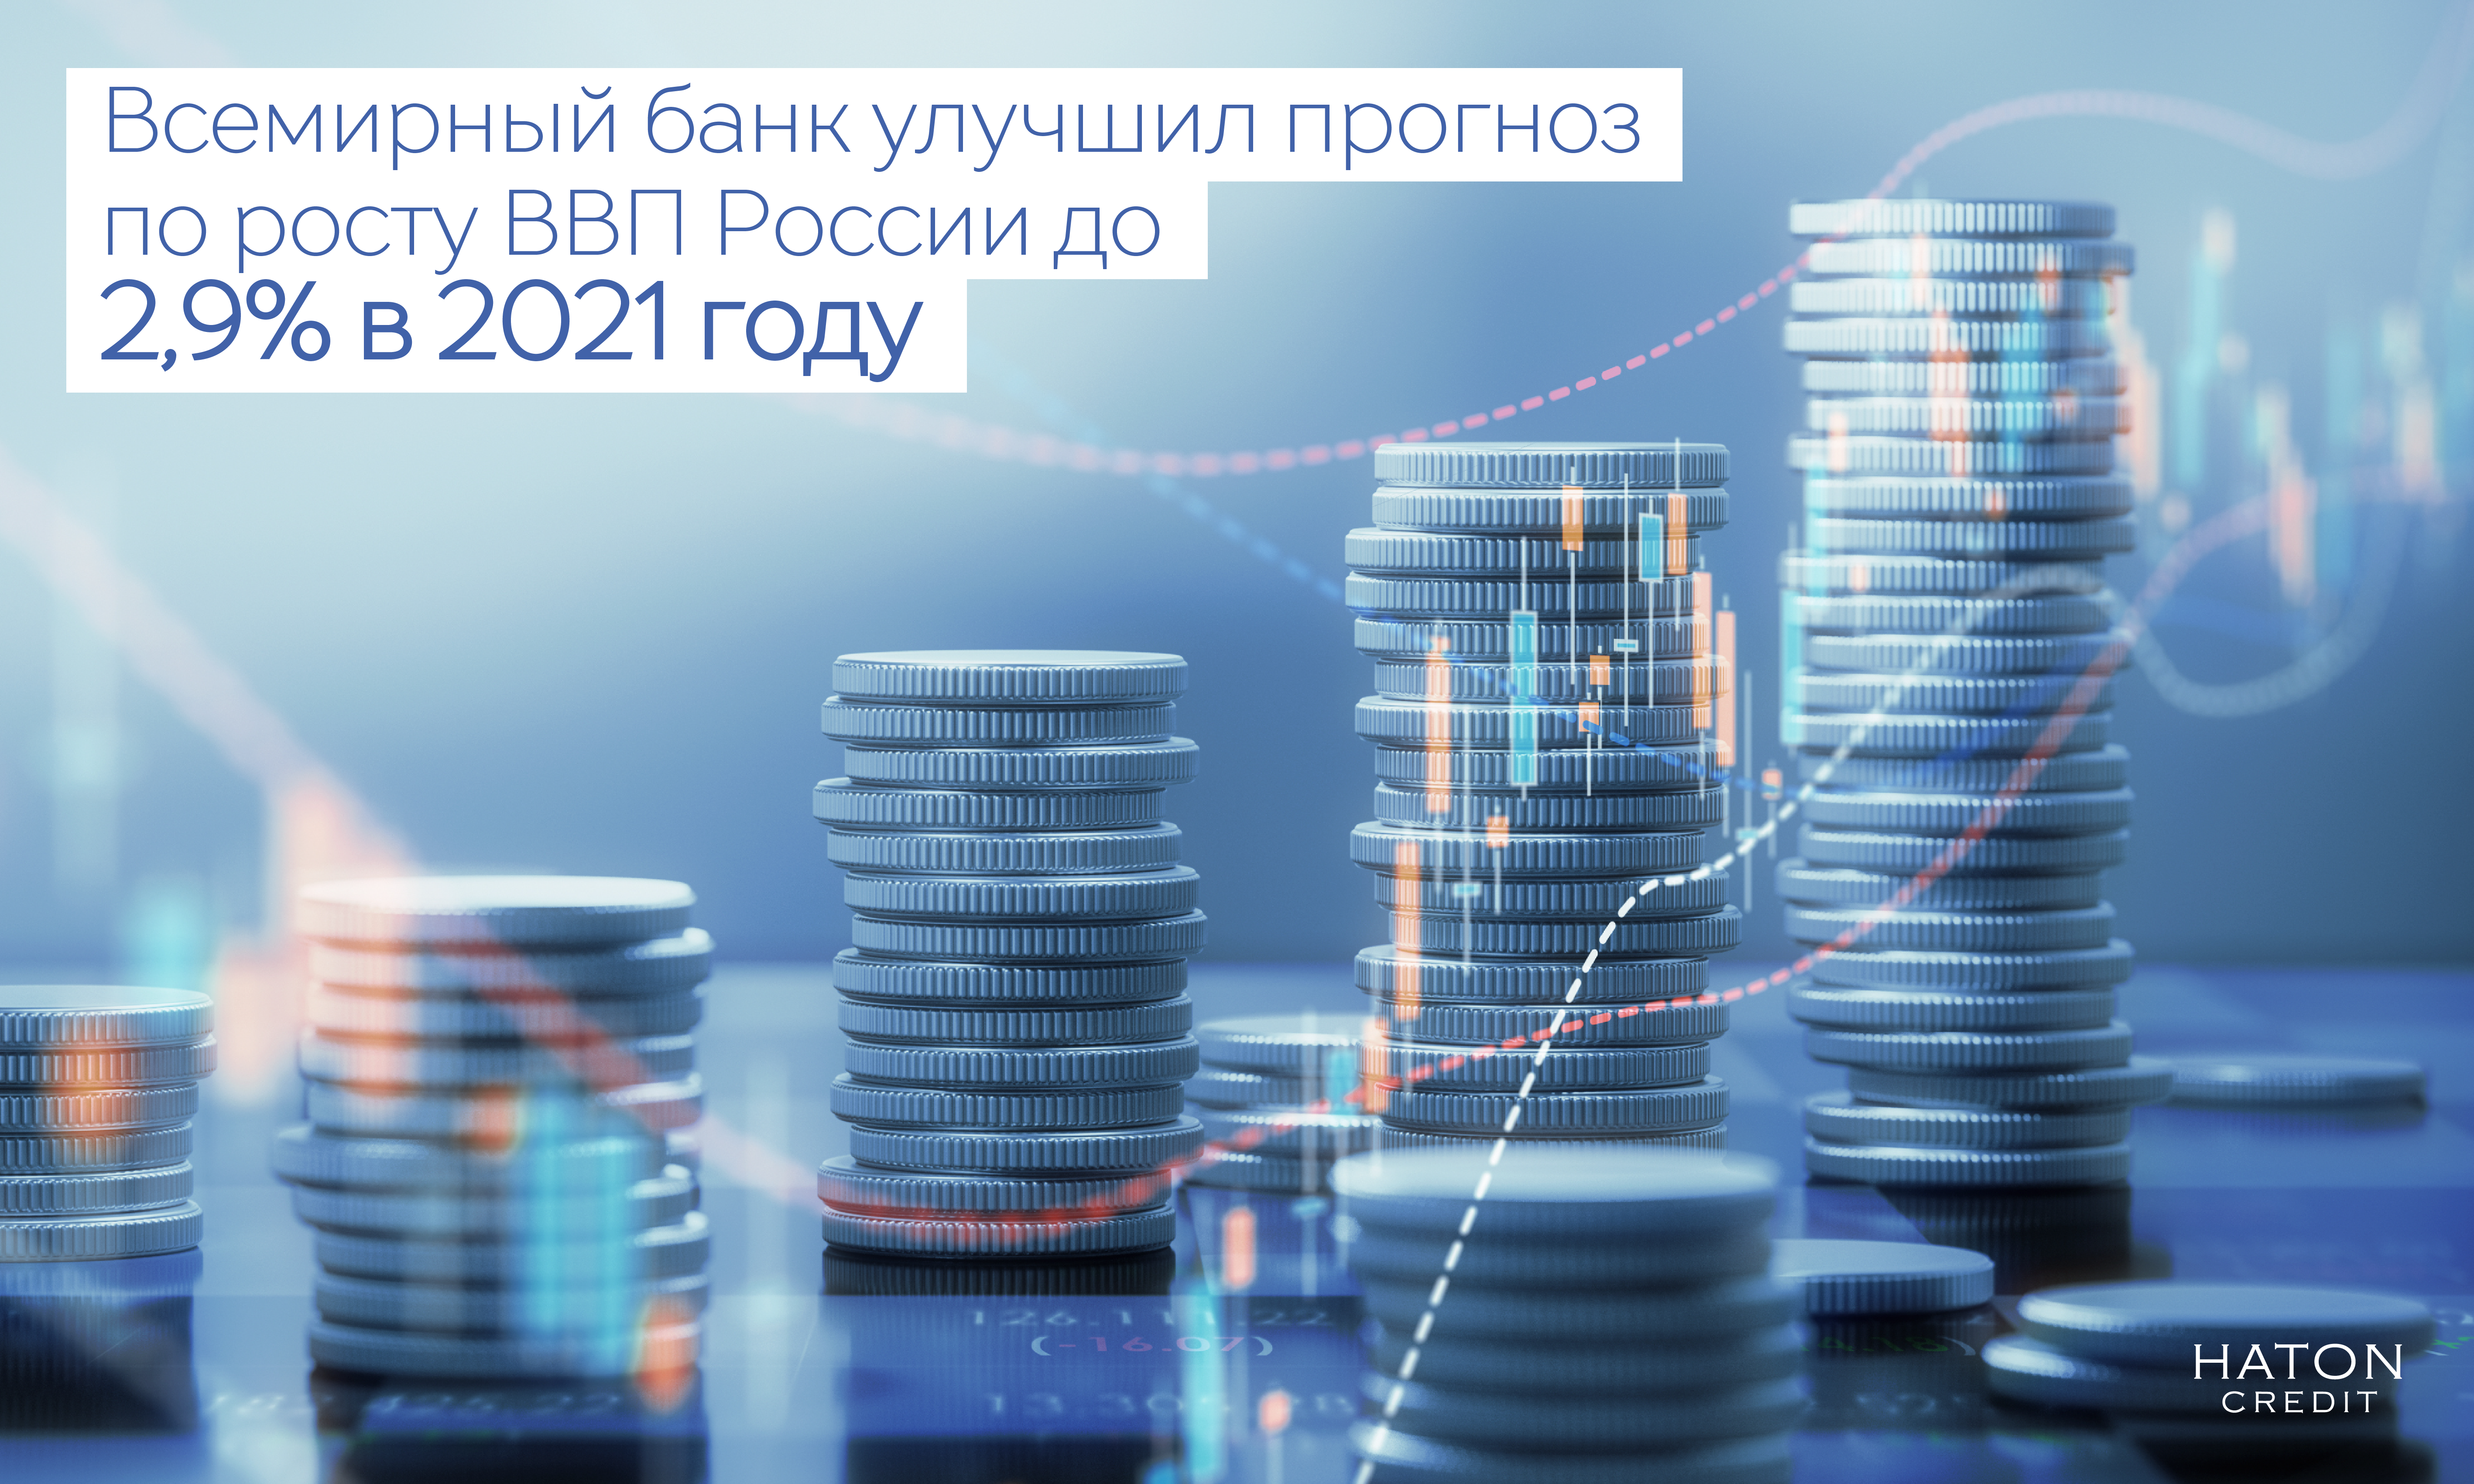 Всемирный банк улучшил прогноз по росту ВВП России до 2,9% в 2021 году